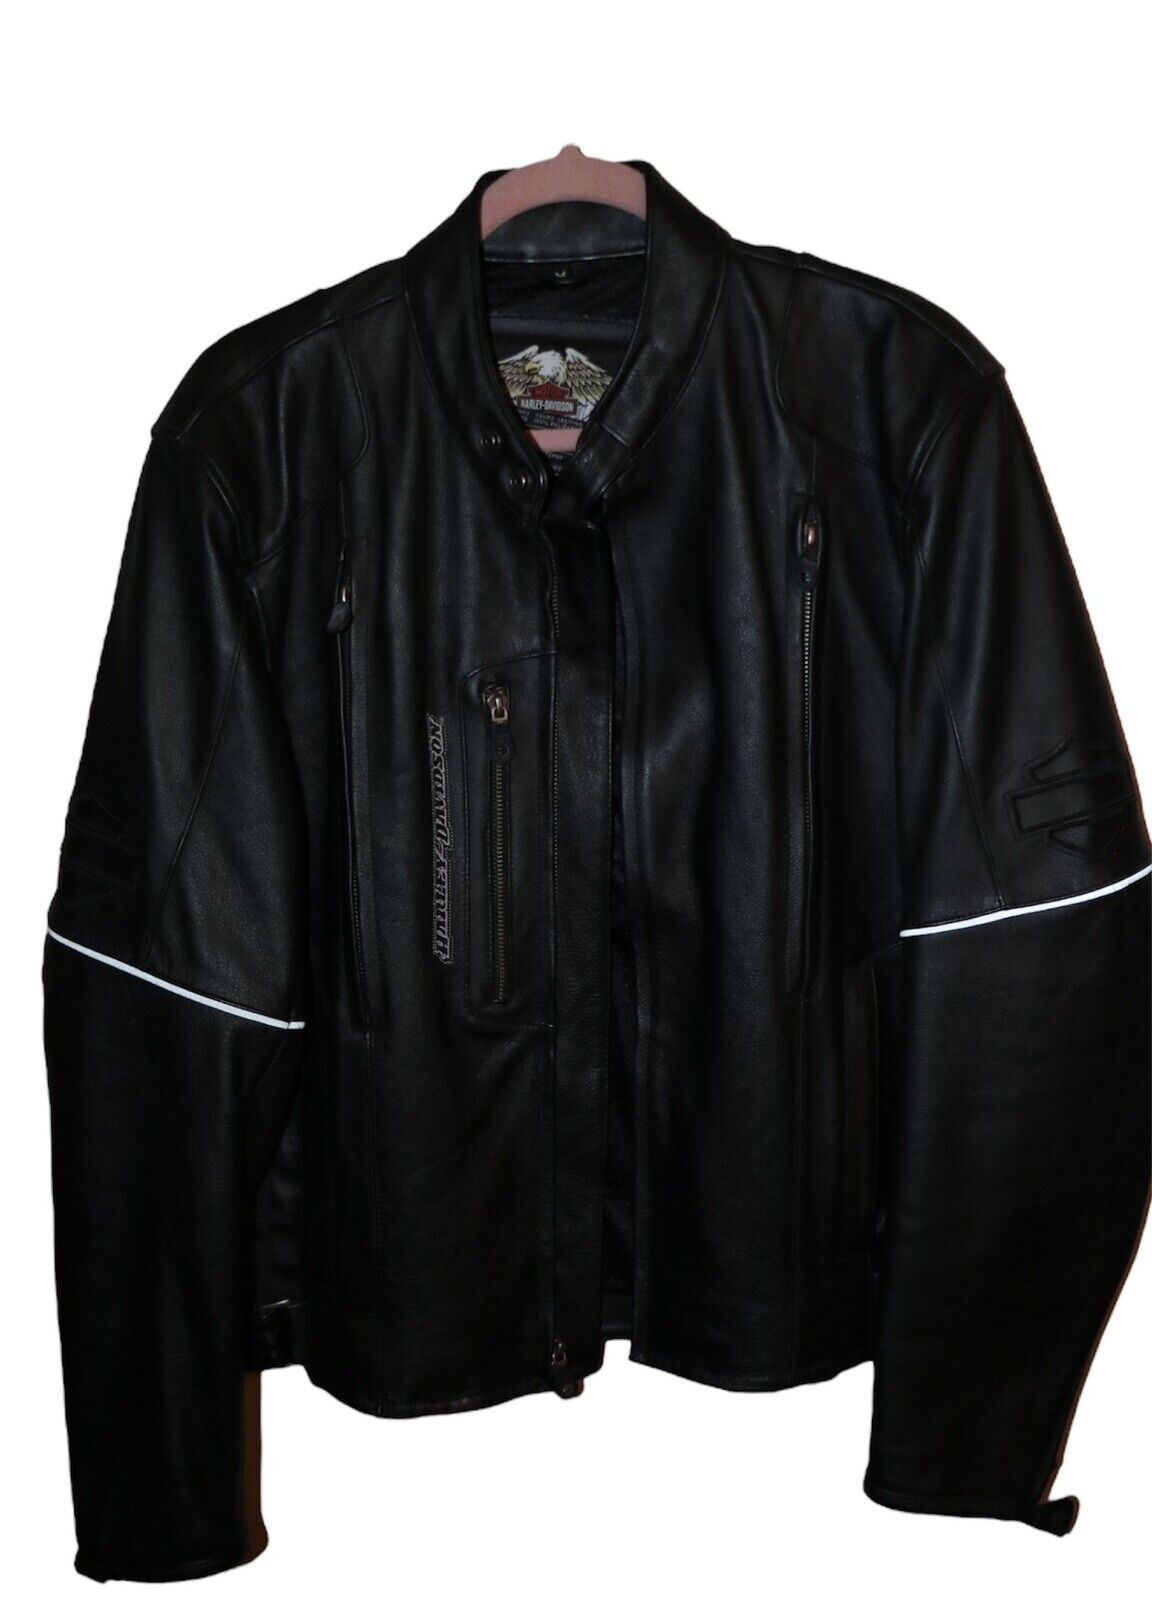 Harley Davidson RN 103819 CA 03402 Black Leather Biker Jacket Medium Lot Of (3)